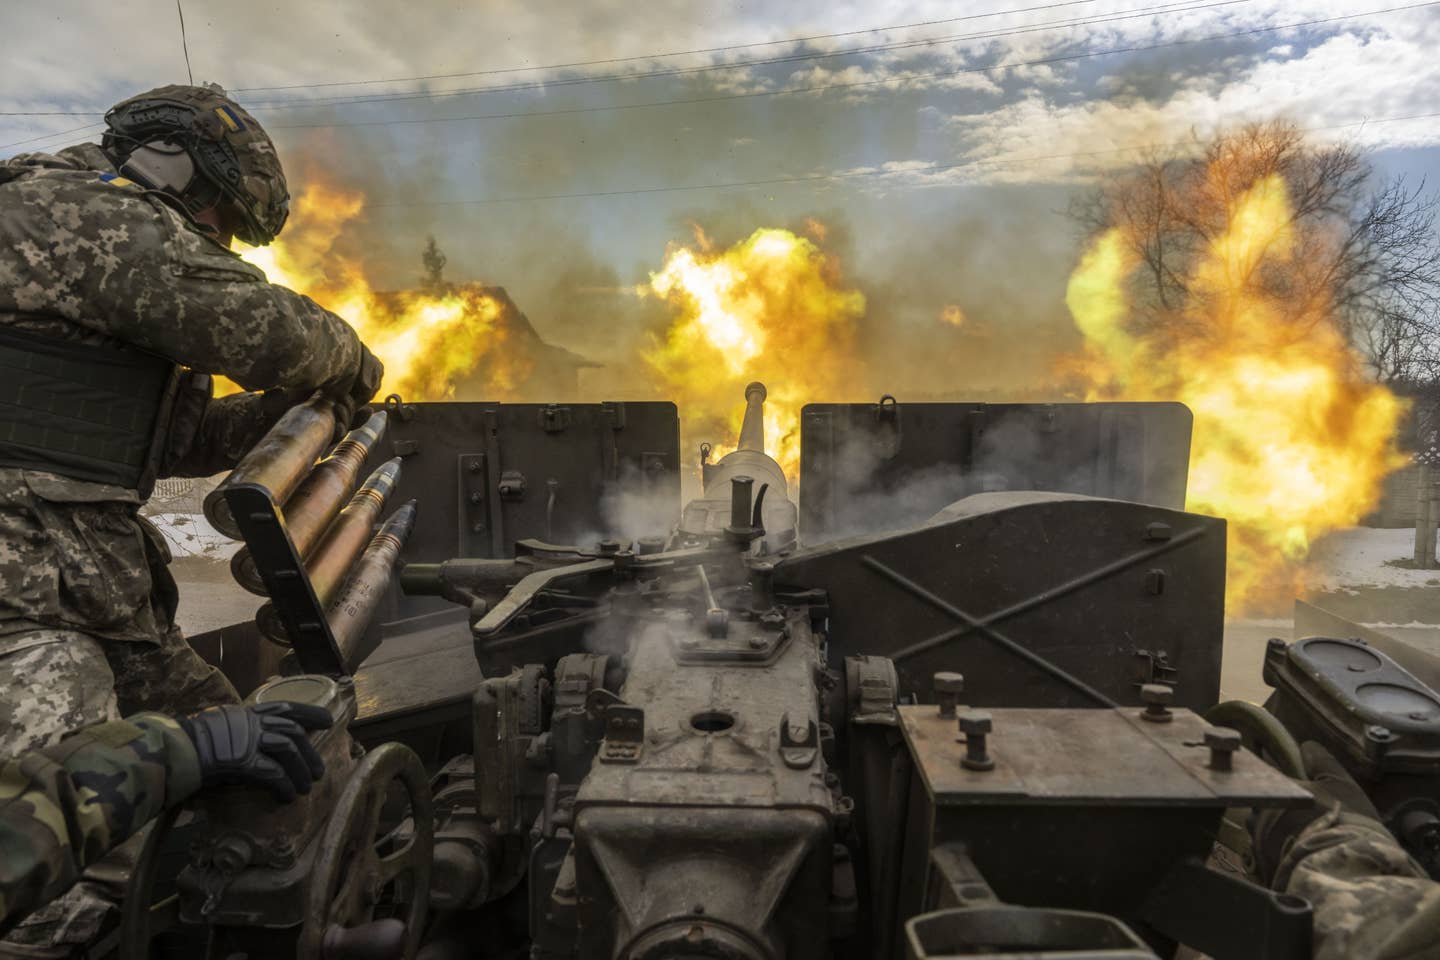 Ukrainian servicemen fire artillery in Bakhmut on April 2. (Photo by Muhammed Enes Yildirim/Anadolu Agency via Getty Images)